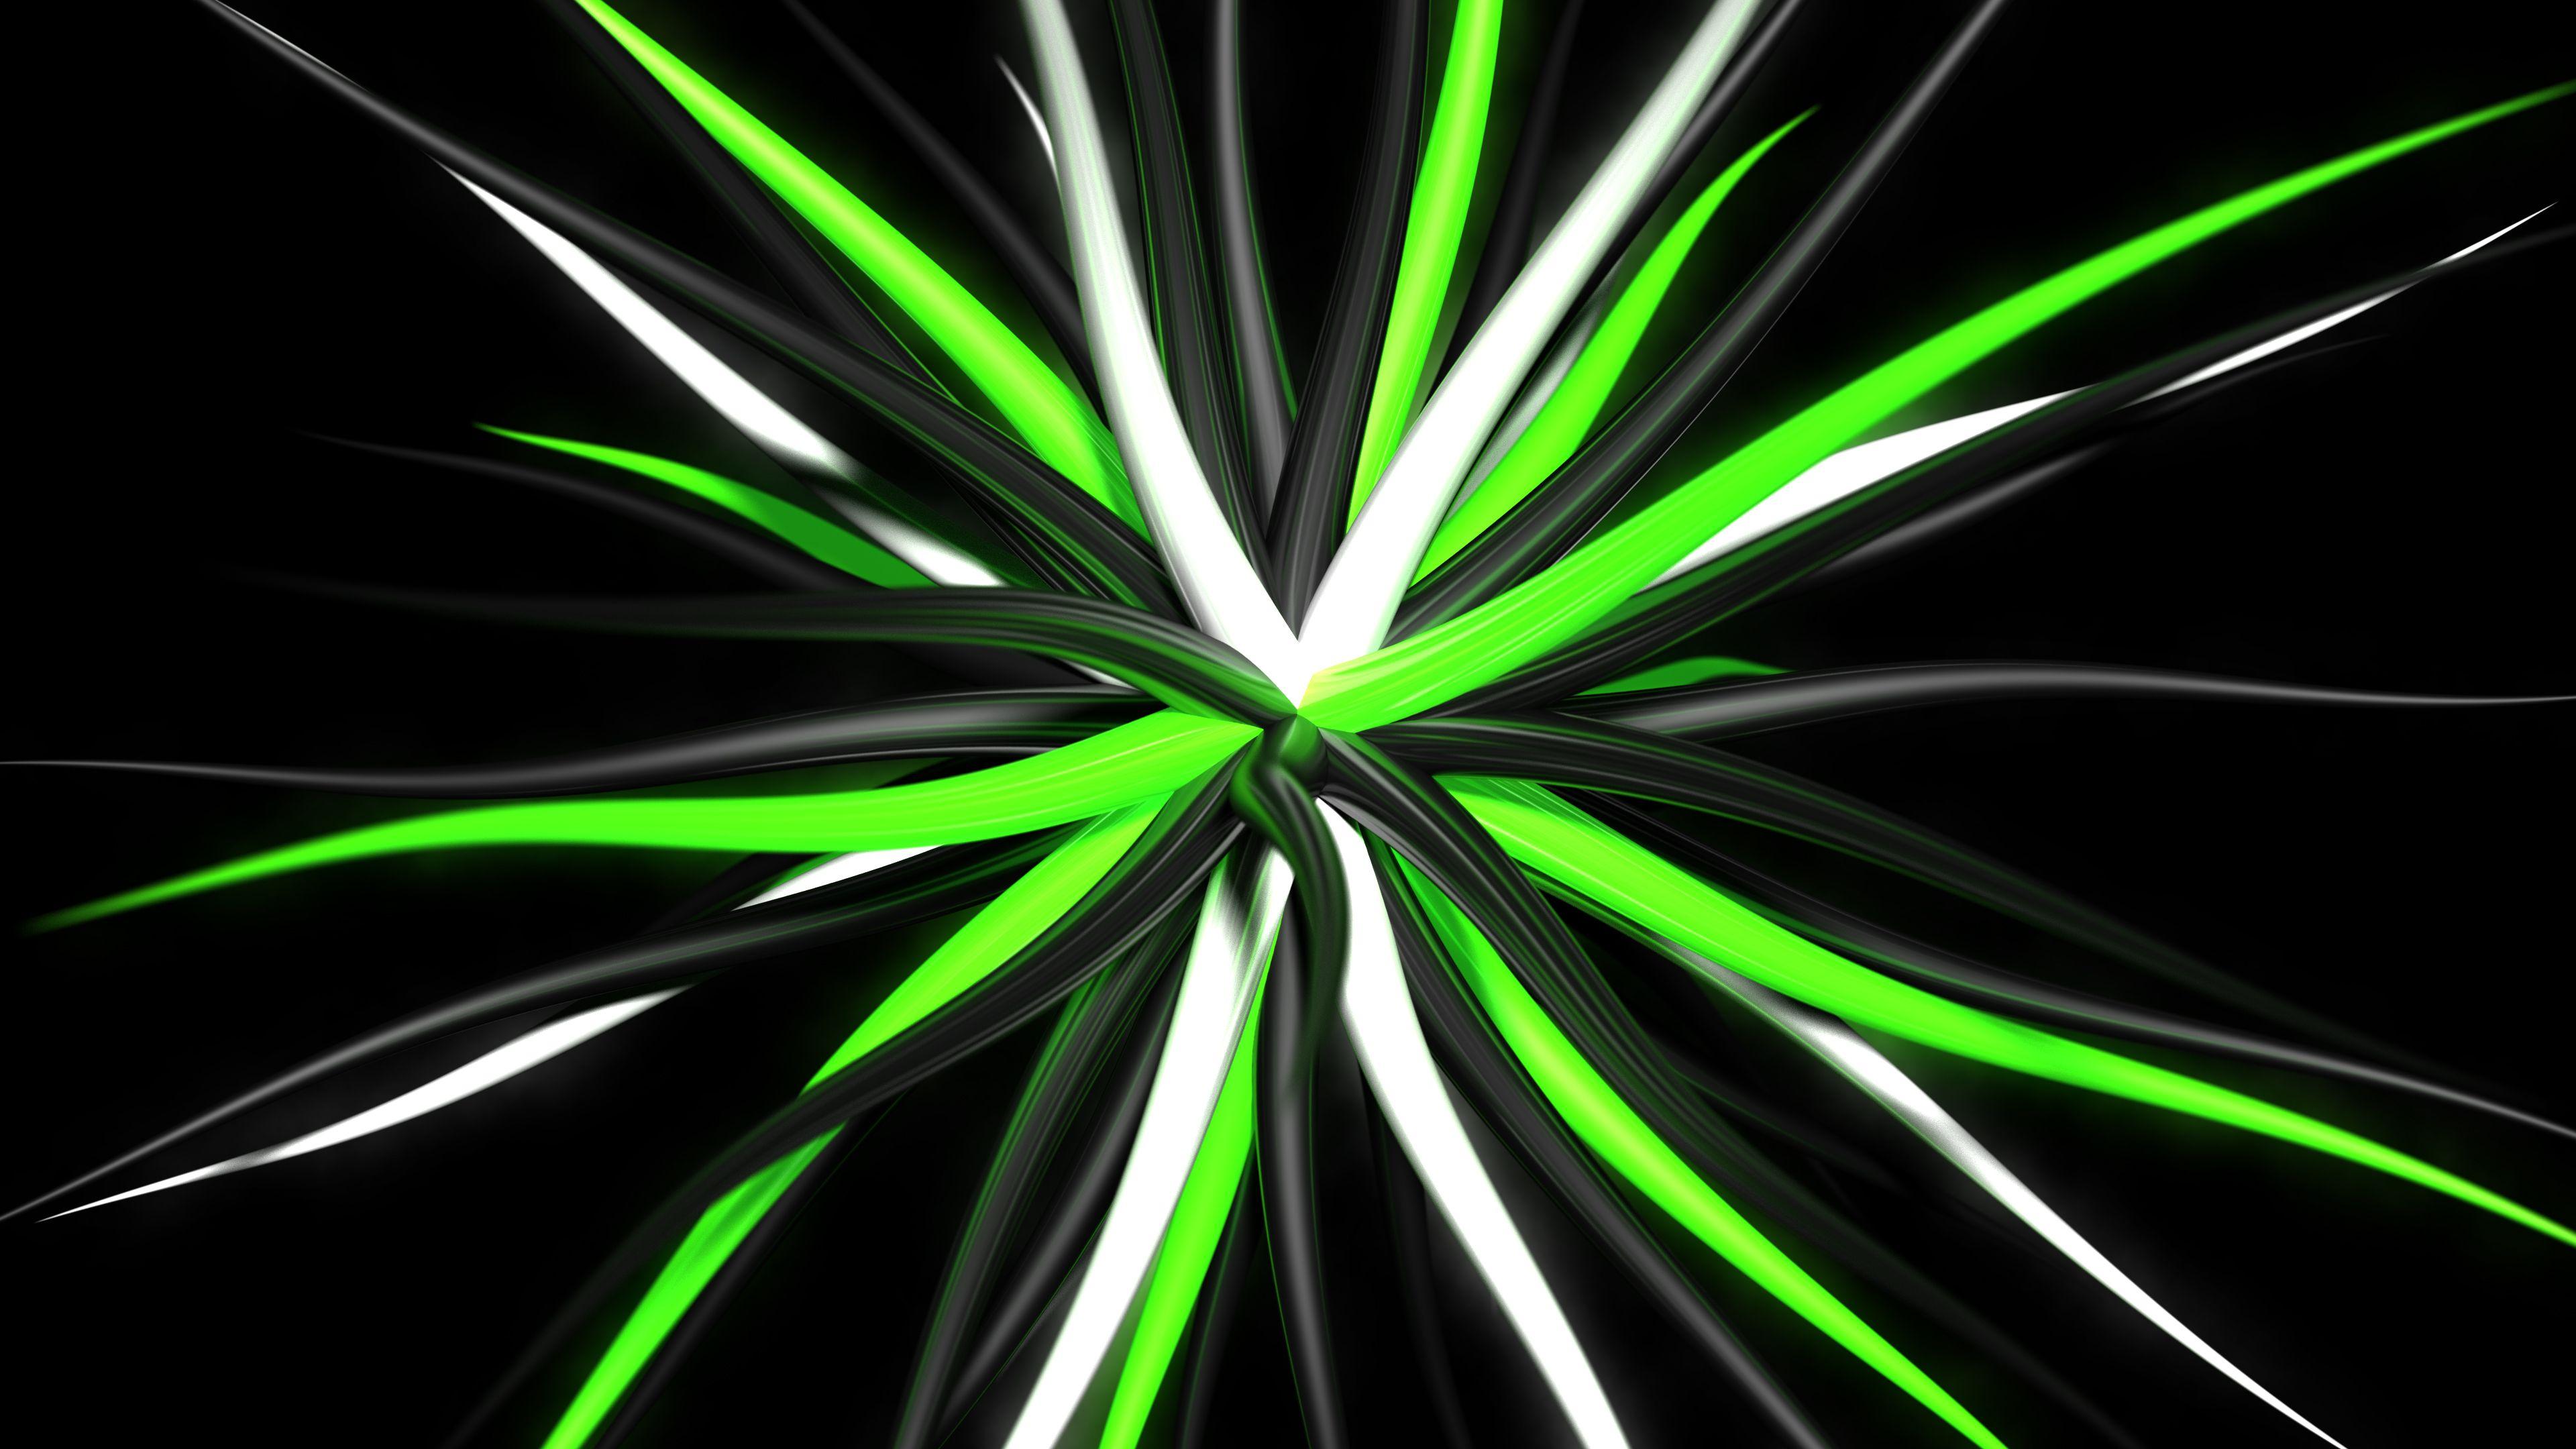 4k green screen background - analyticsdads